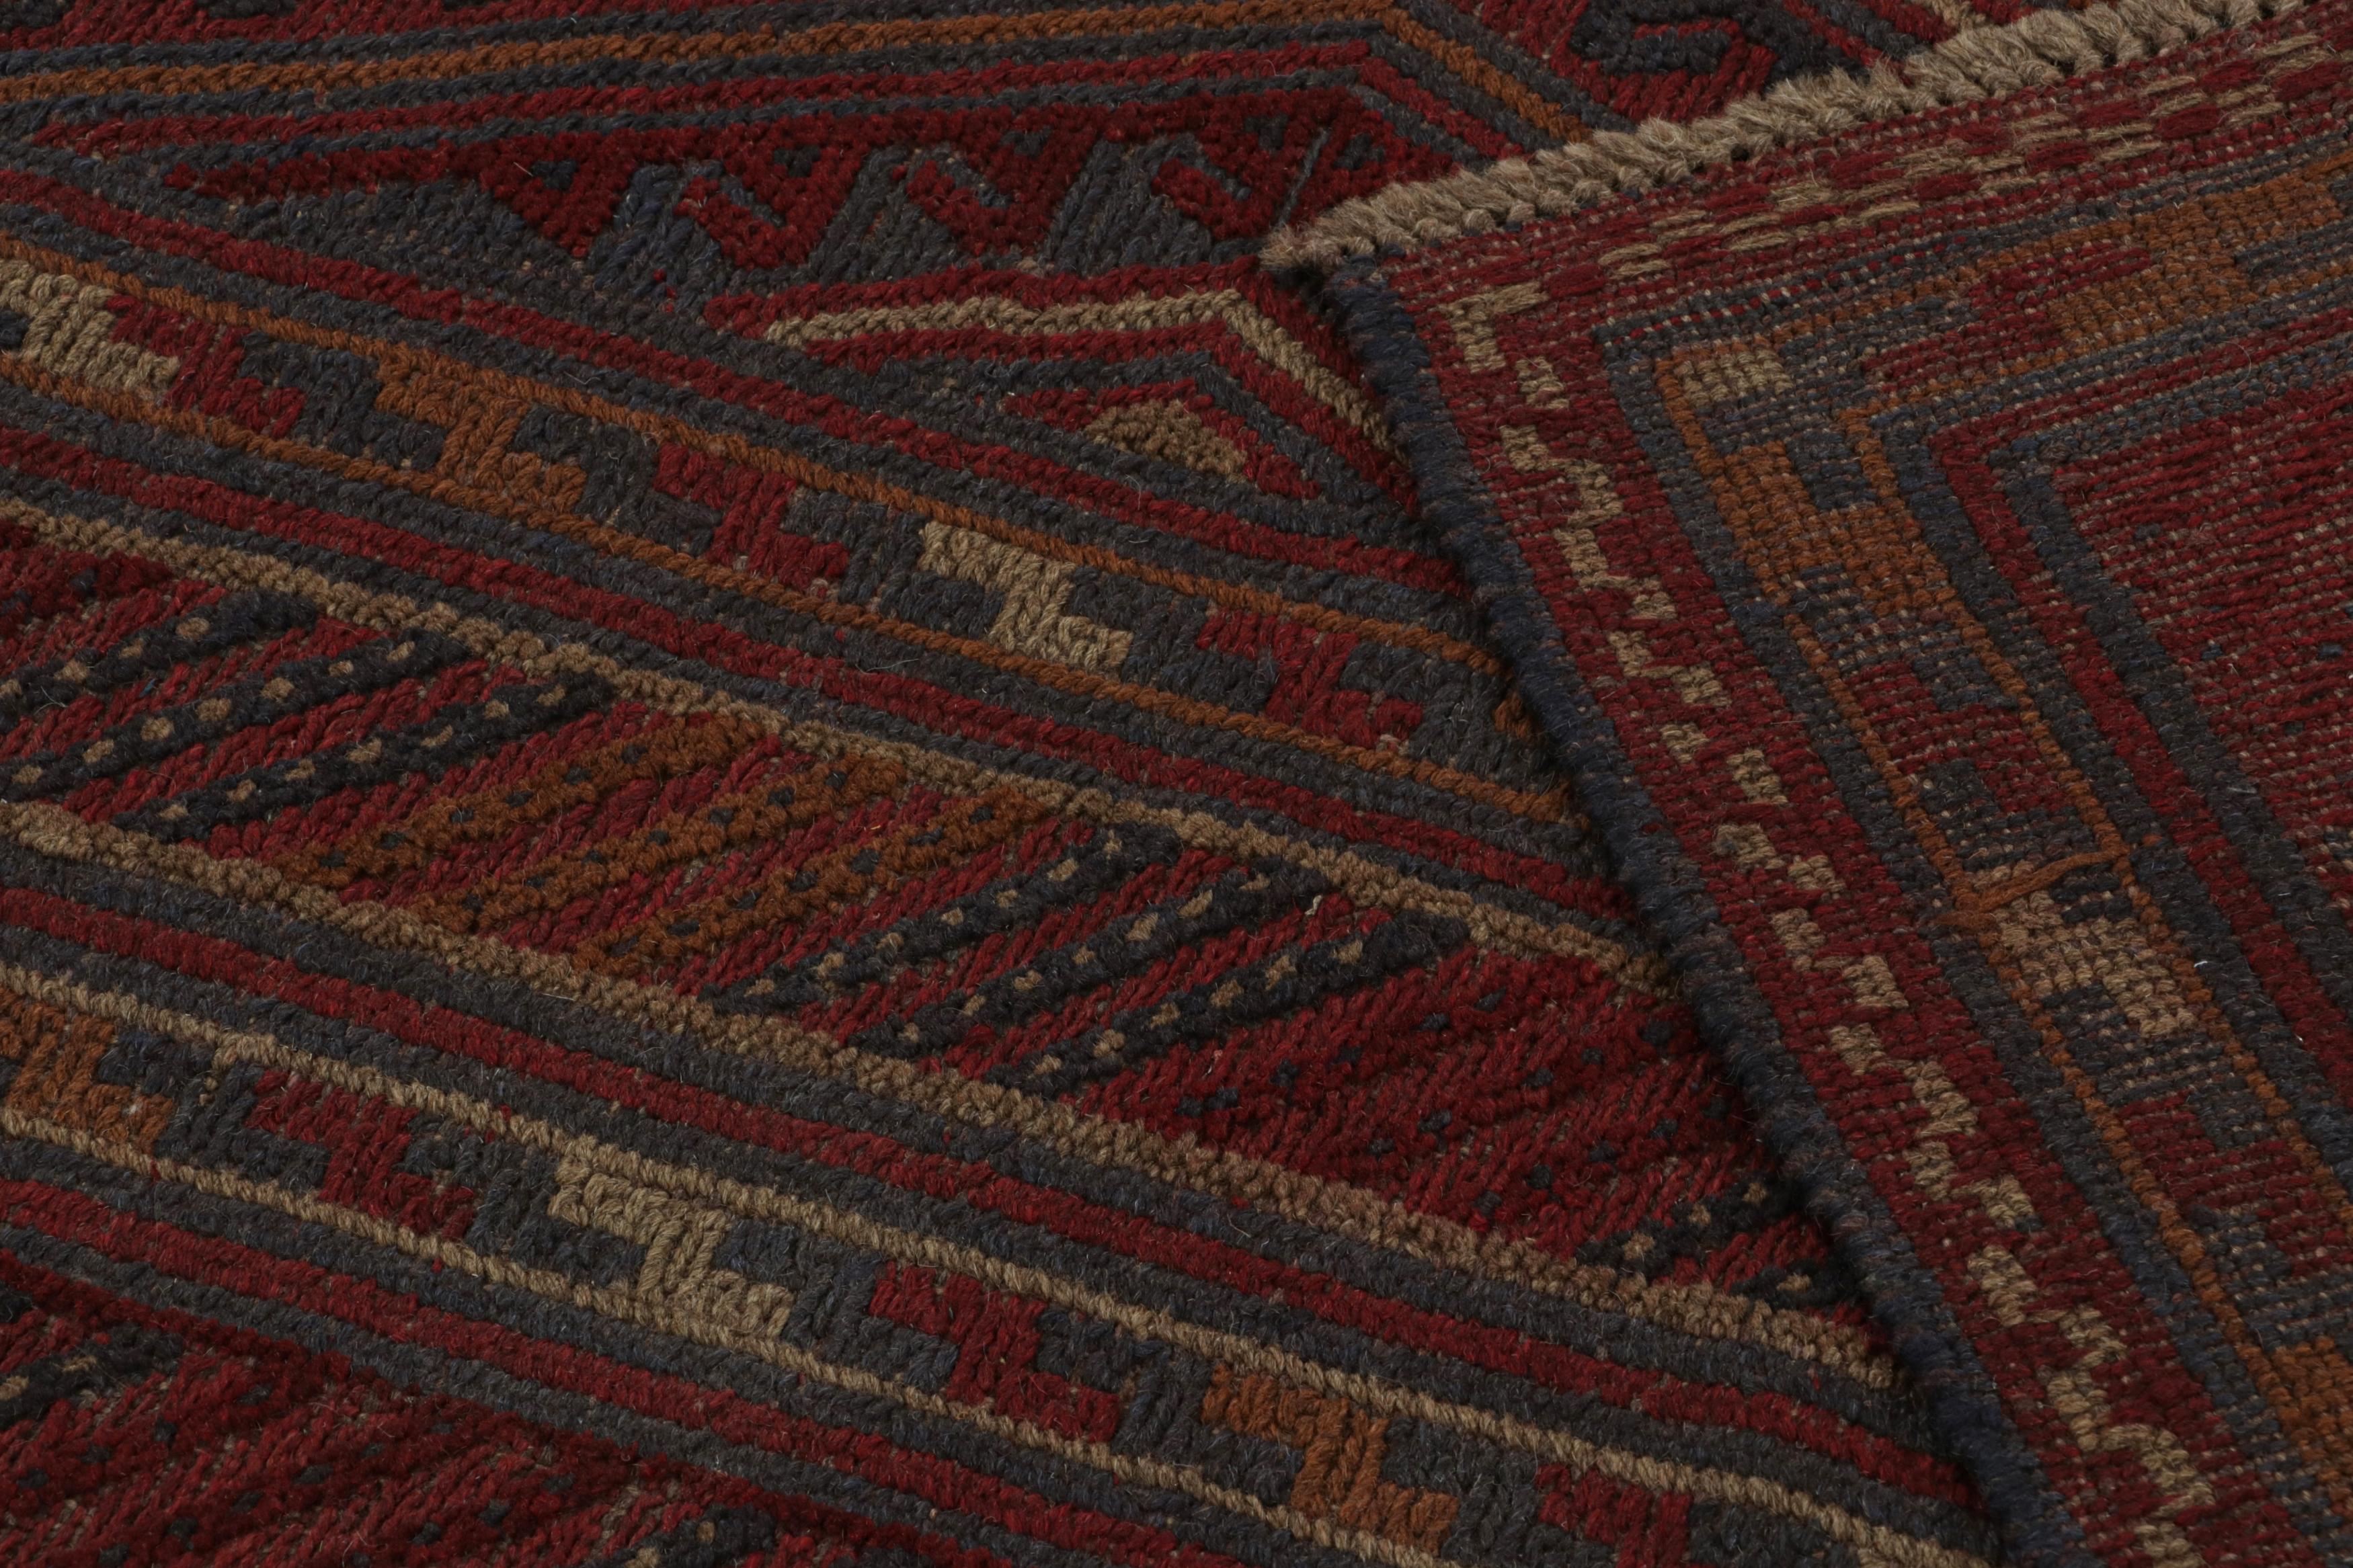 Wool Rug & Kilim’s Mashwani Afghan Baluch Rug in Red, Rust & Blue Geometric Patterns  For Sale